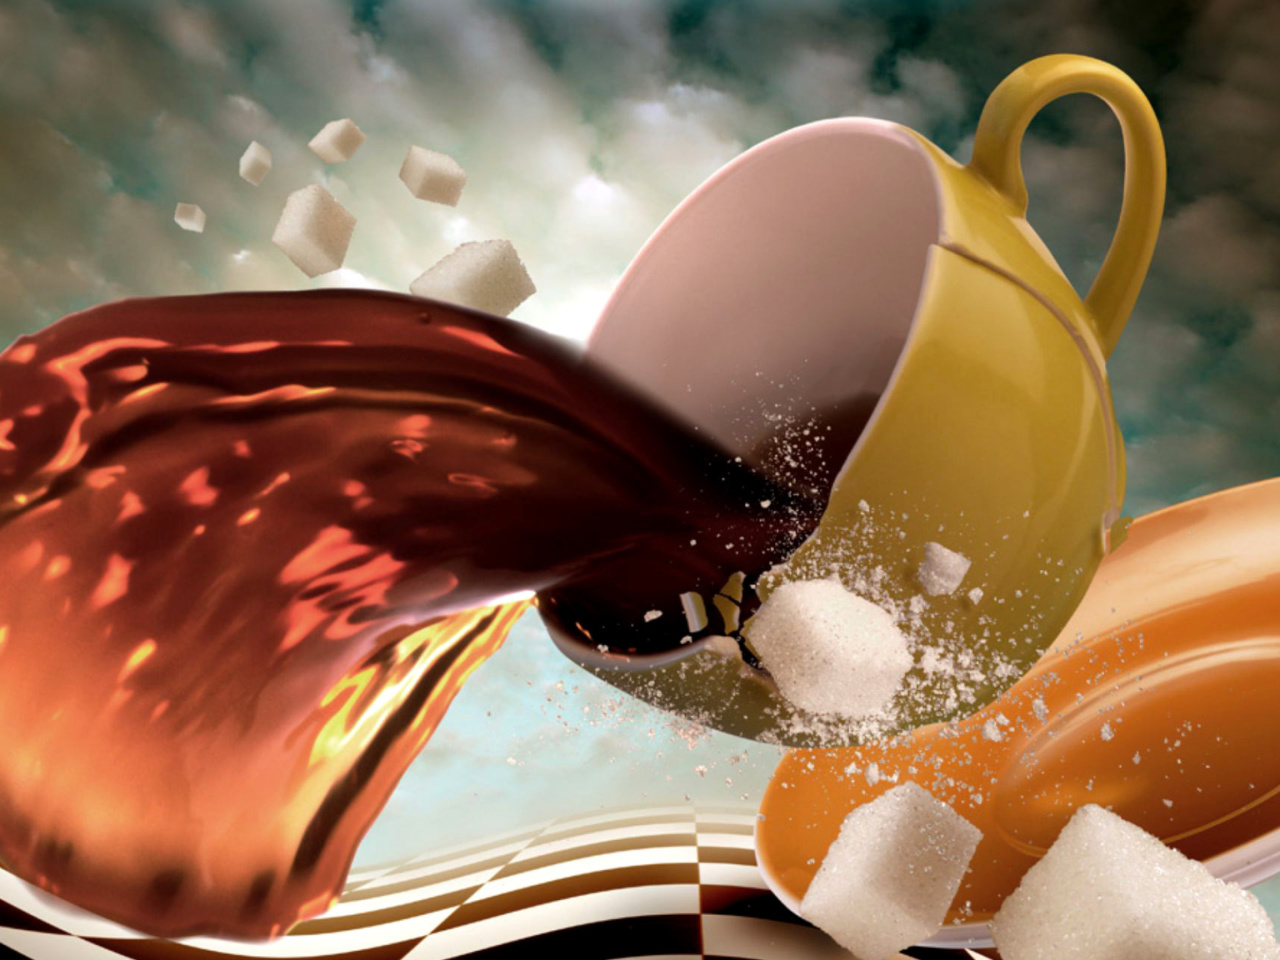 Обои Surrealism Coffee Cup with Sugar cubes 1280x960